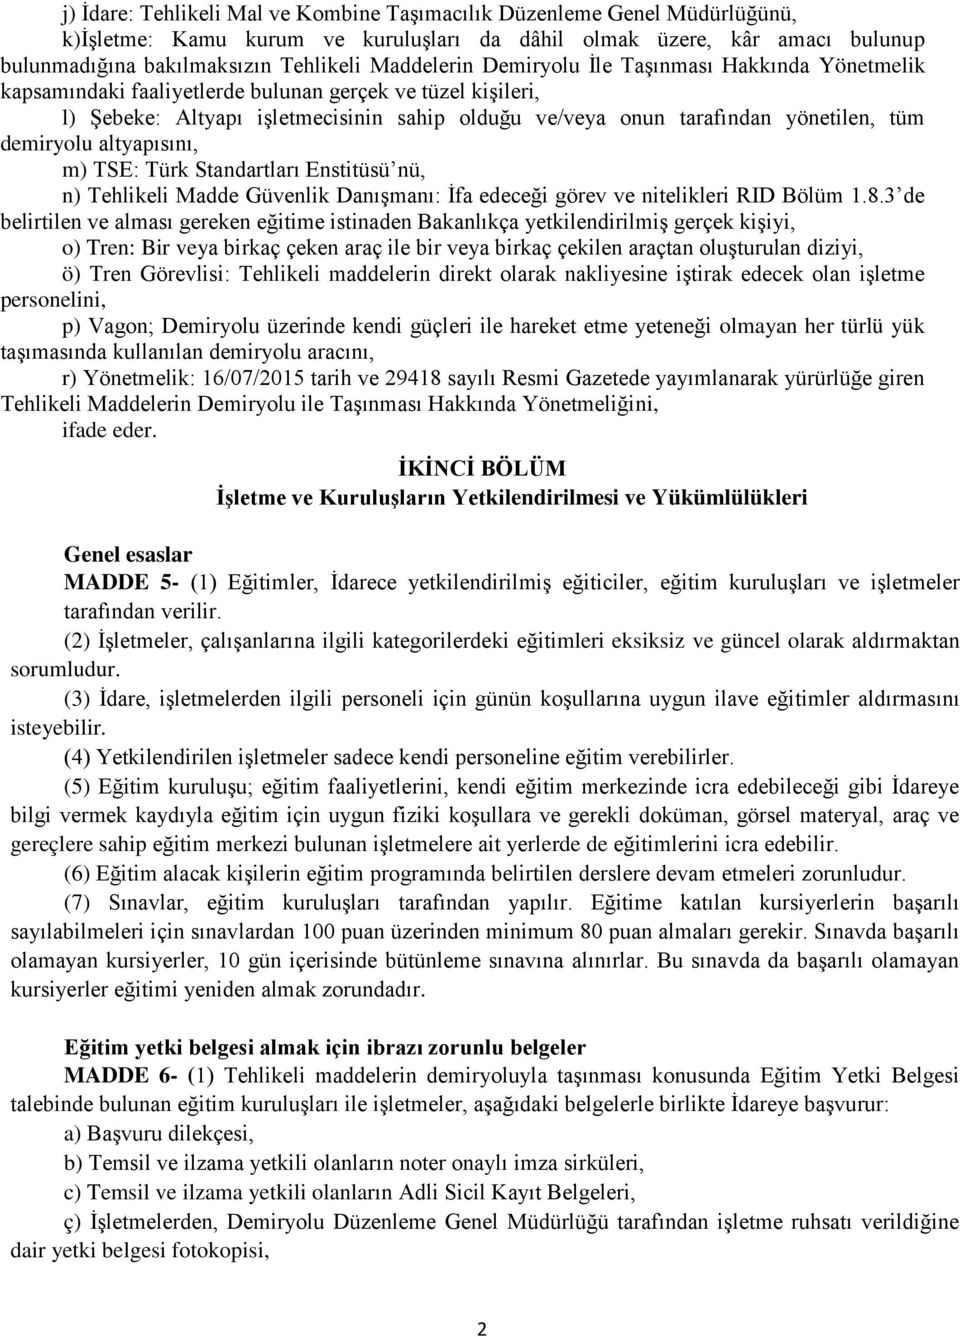 tüm demiryolu altyapısını, m) TSE: Türk Standartları Enstitüsü nü, n) Tehlikeli Madde Güvenlik Danışmanı: İfa edeceği görev ve nitelikleri RID Bölüm 1.8.